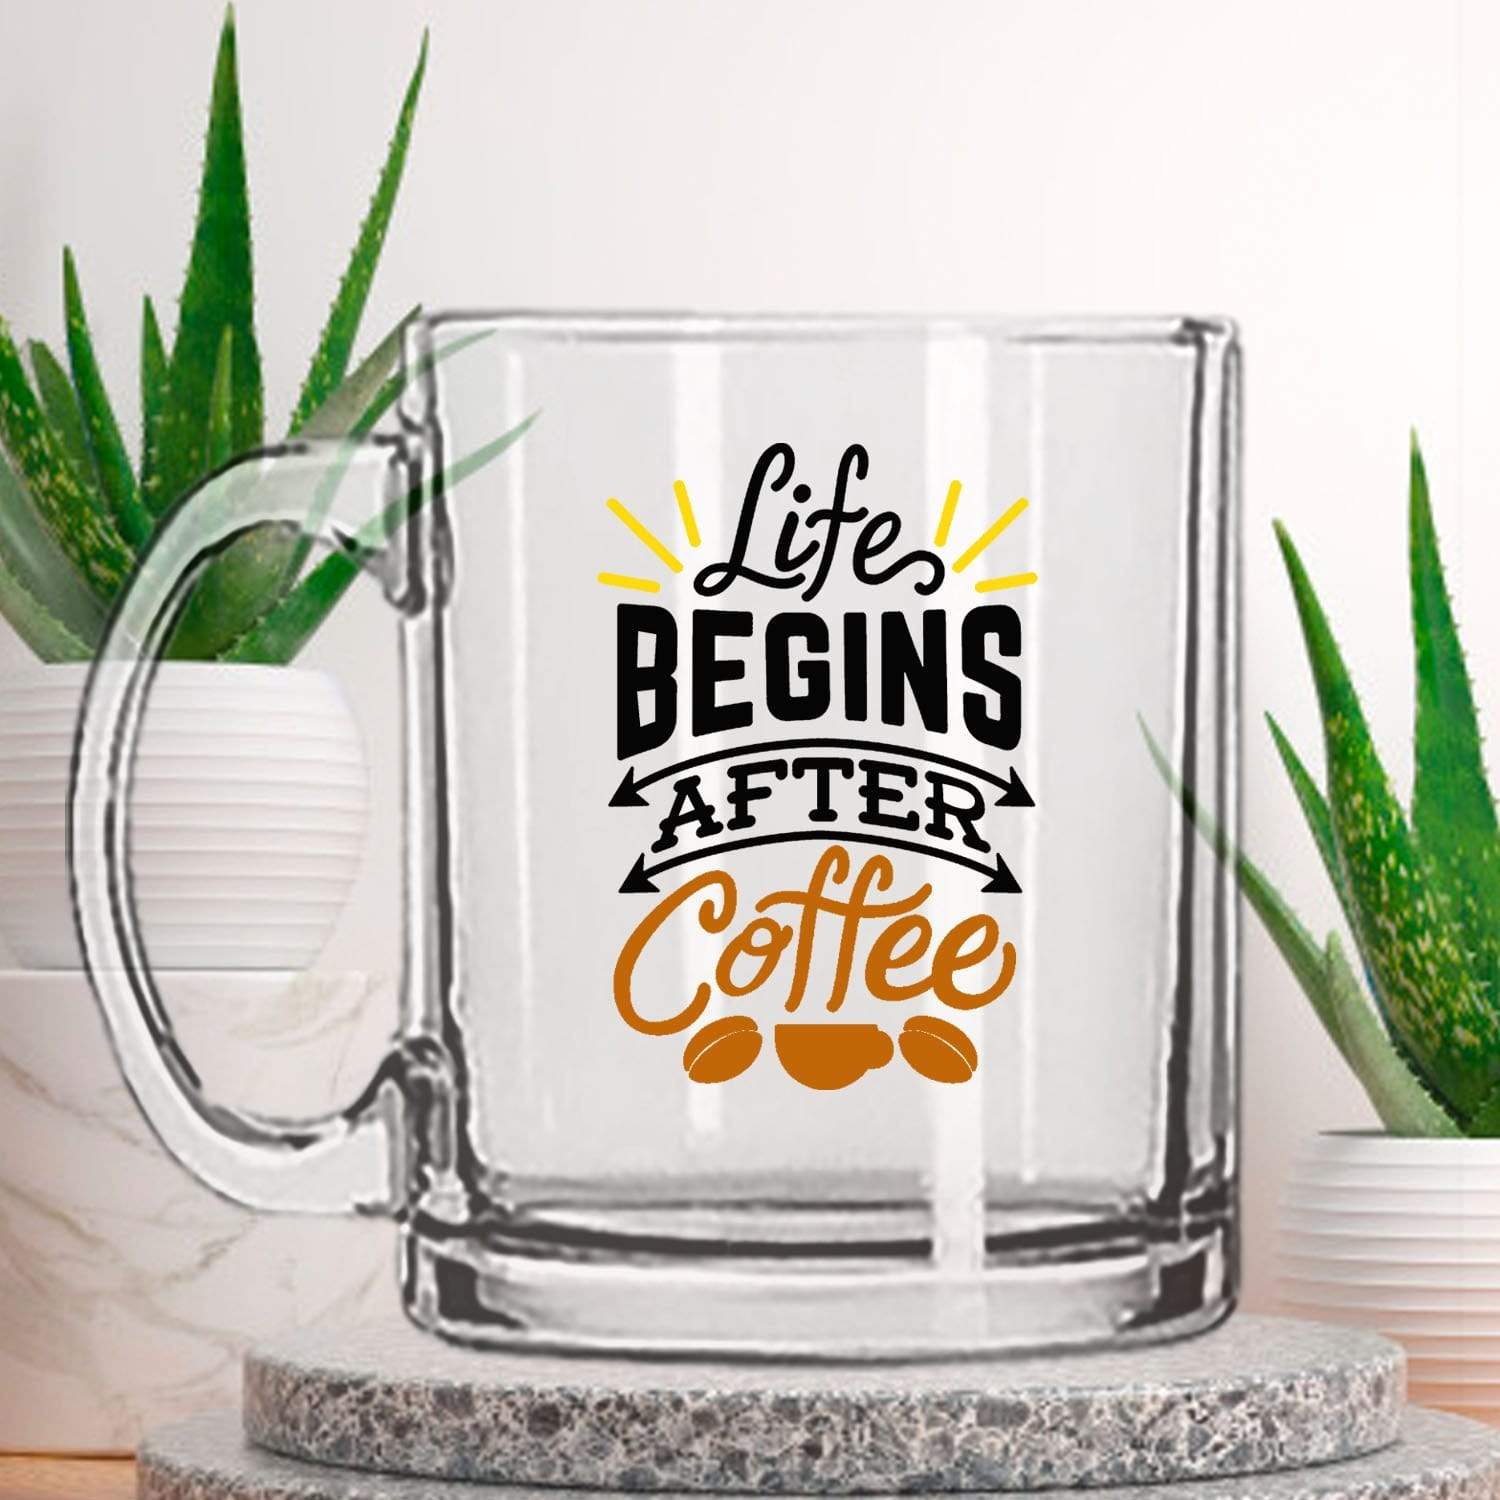 https://fabkraft.com/cdn/shop/products/ikraft-clear-mugs-ikraft-clear-mug-design-life-begins-after-coffee-20865085472918_1800x1800.jpg?v=1614237516